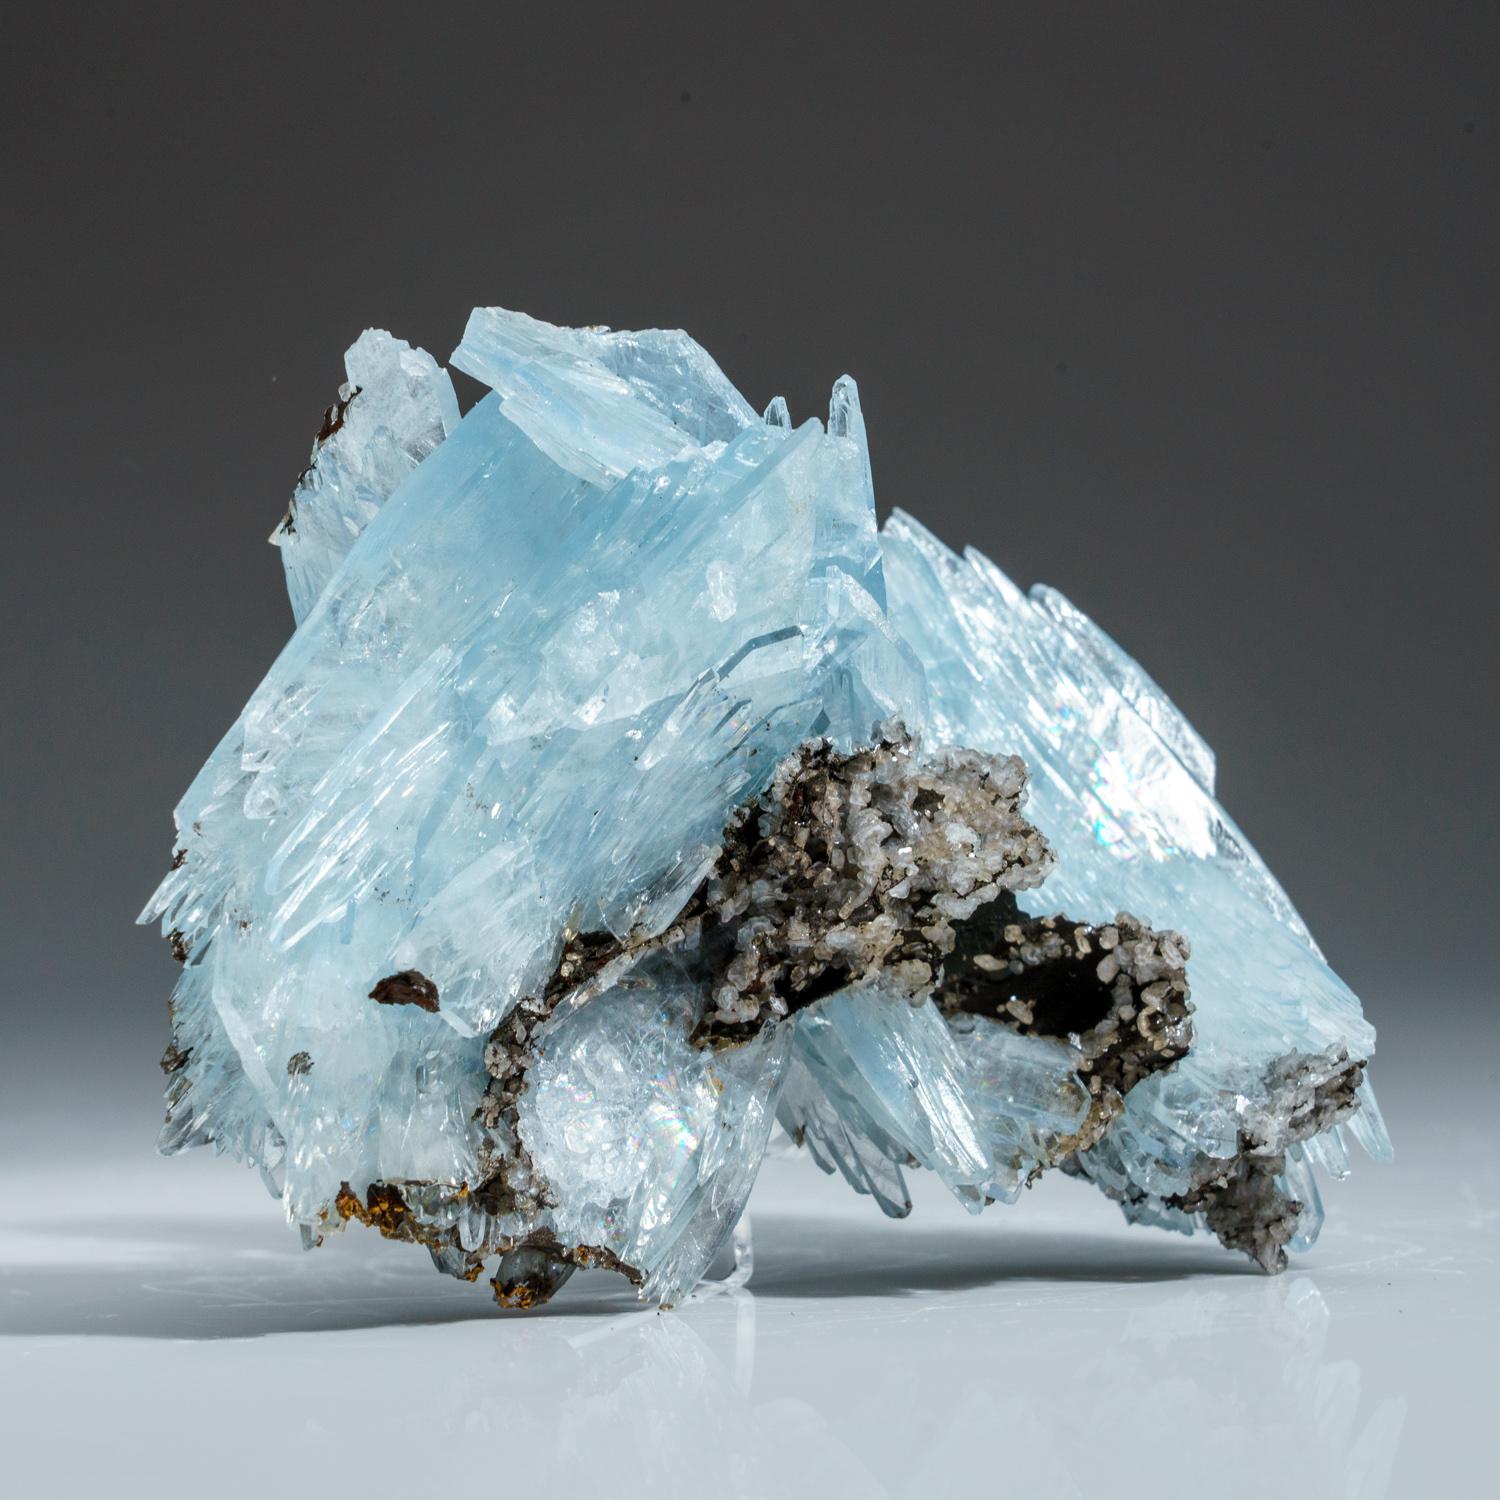 Baryt aus Jebel Ouichane, Sagangane, Provinz Nador, Region L'Oriental, Marokko

Hier ist eine großartige Ansammlung dieser unglaublichen neuen blauen Barytsteine, die im vergangenen Jahr entdeckt wurden. Das Kristallwachstum erfolgt in radialen,